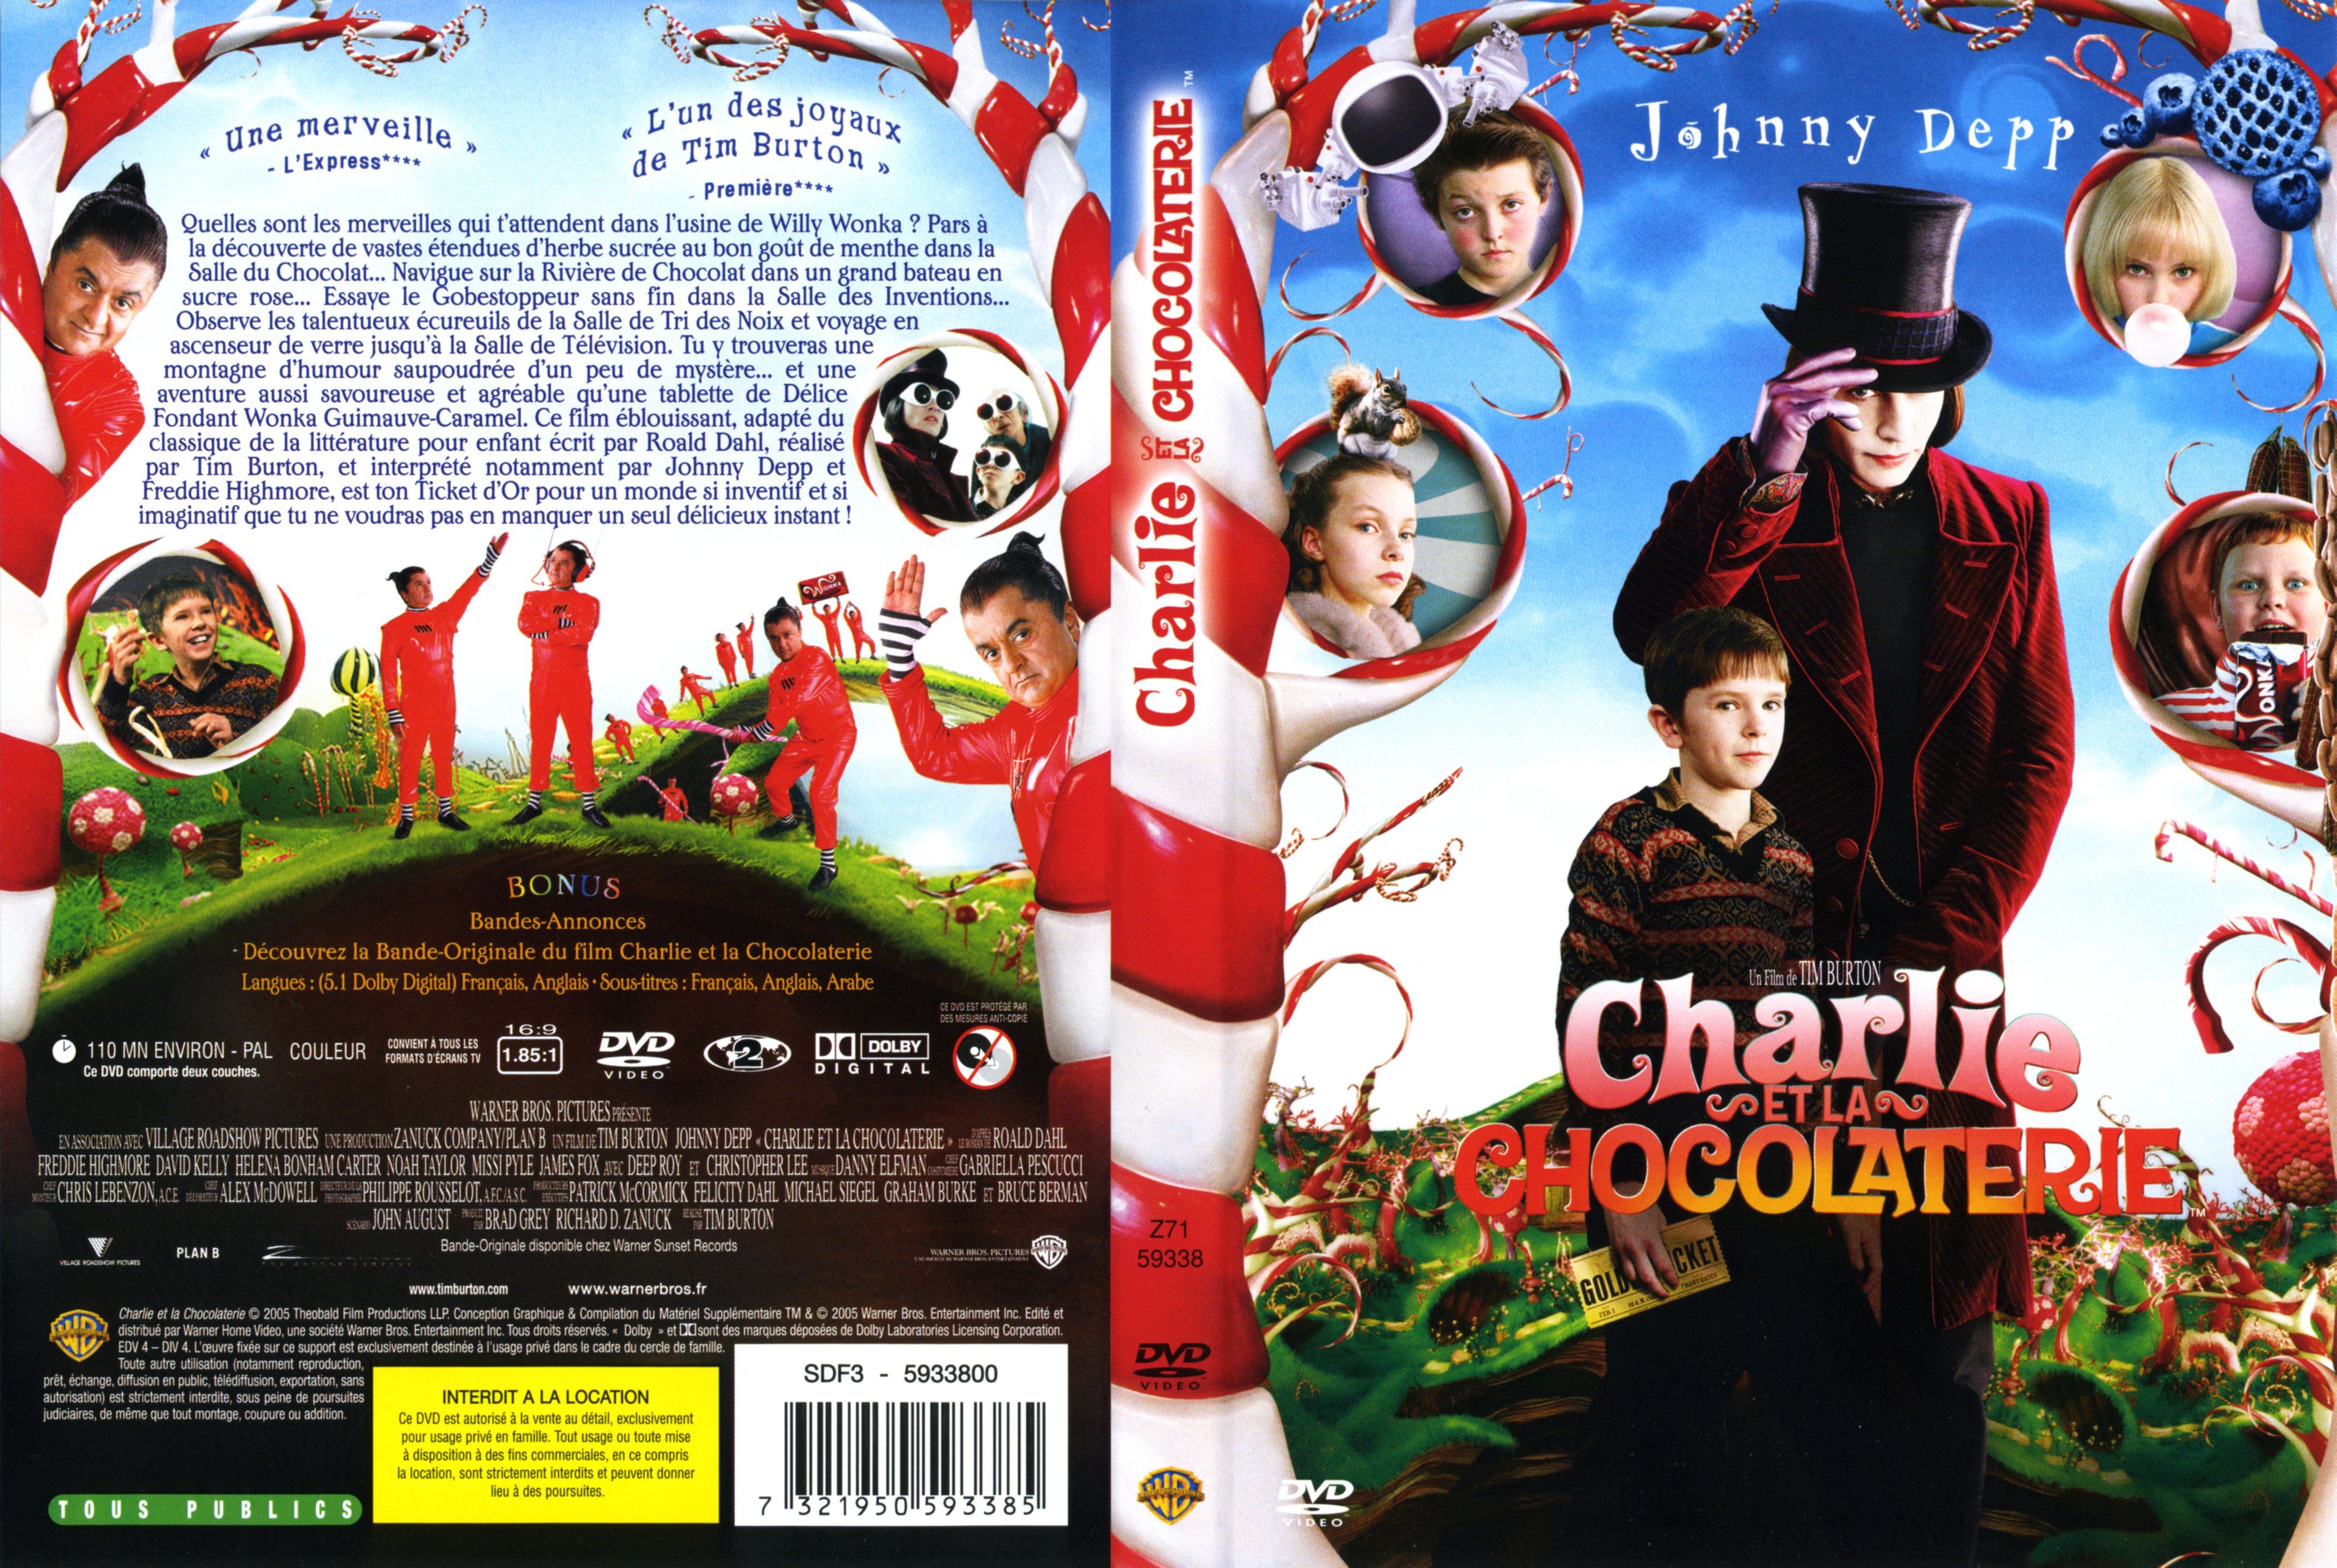 Jaquette DVD Charlie et la chocolaterie (2005)